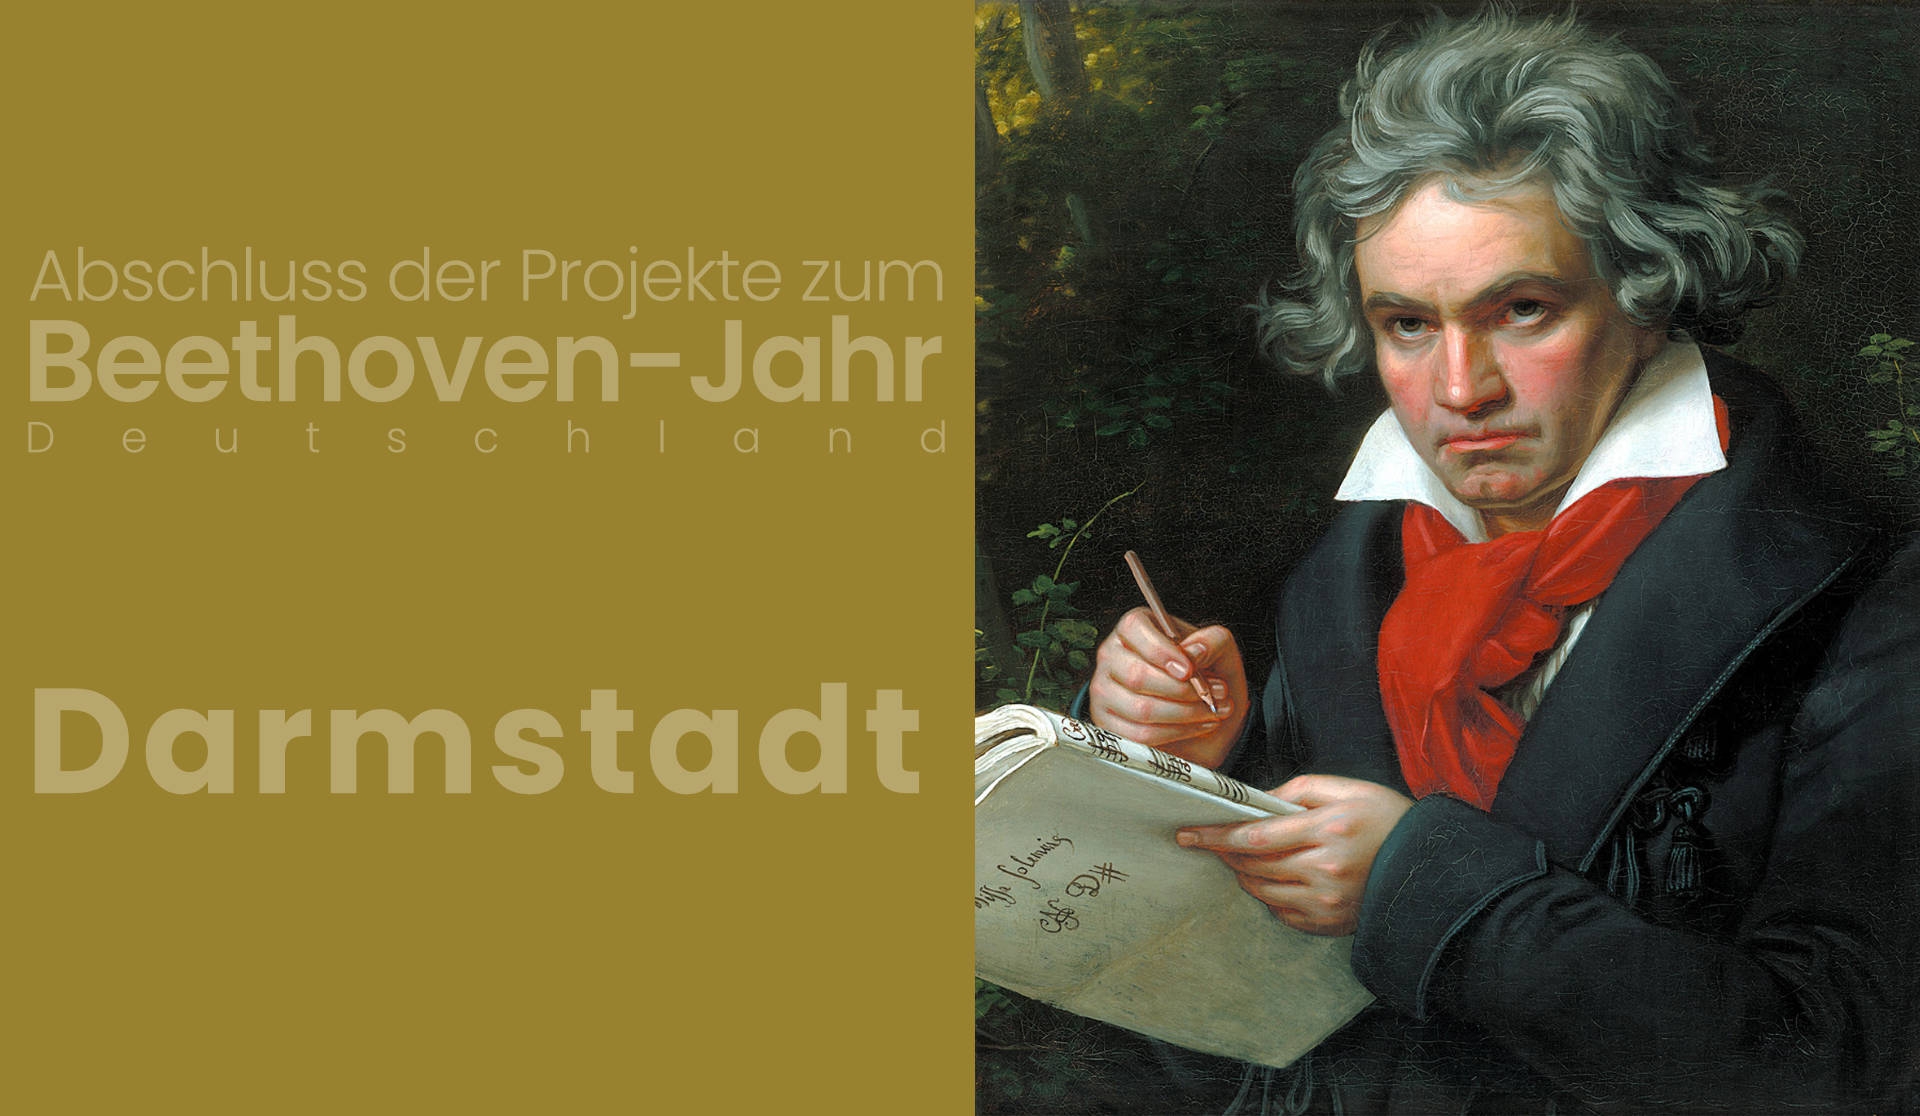 26.12.2021 – Zakończenie Roku Beethovena, Darmstadt, Niemcy